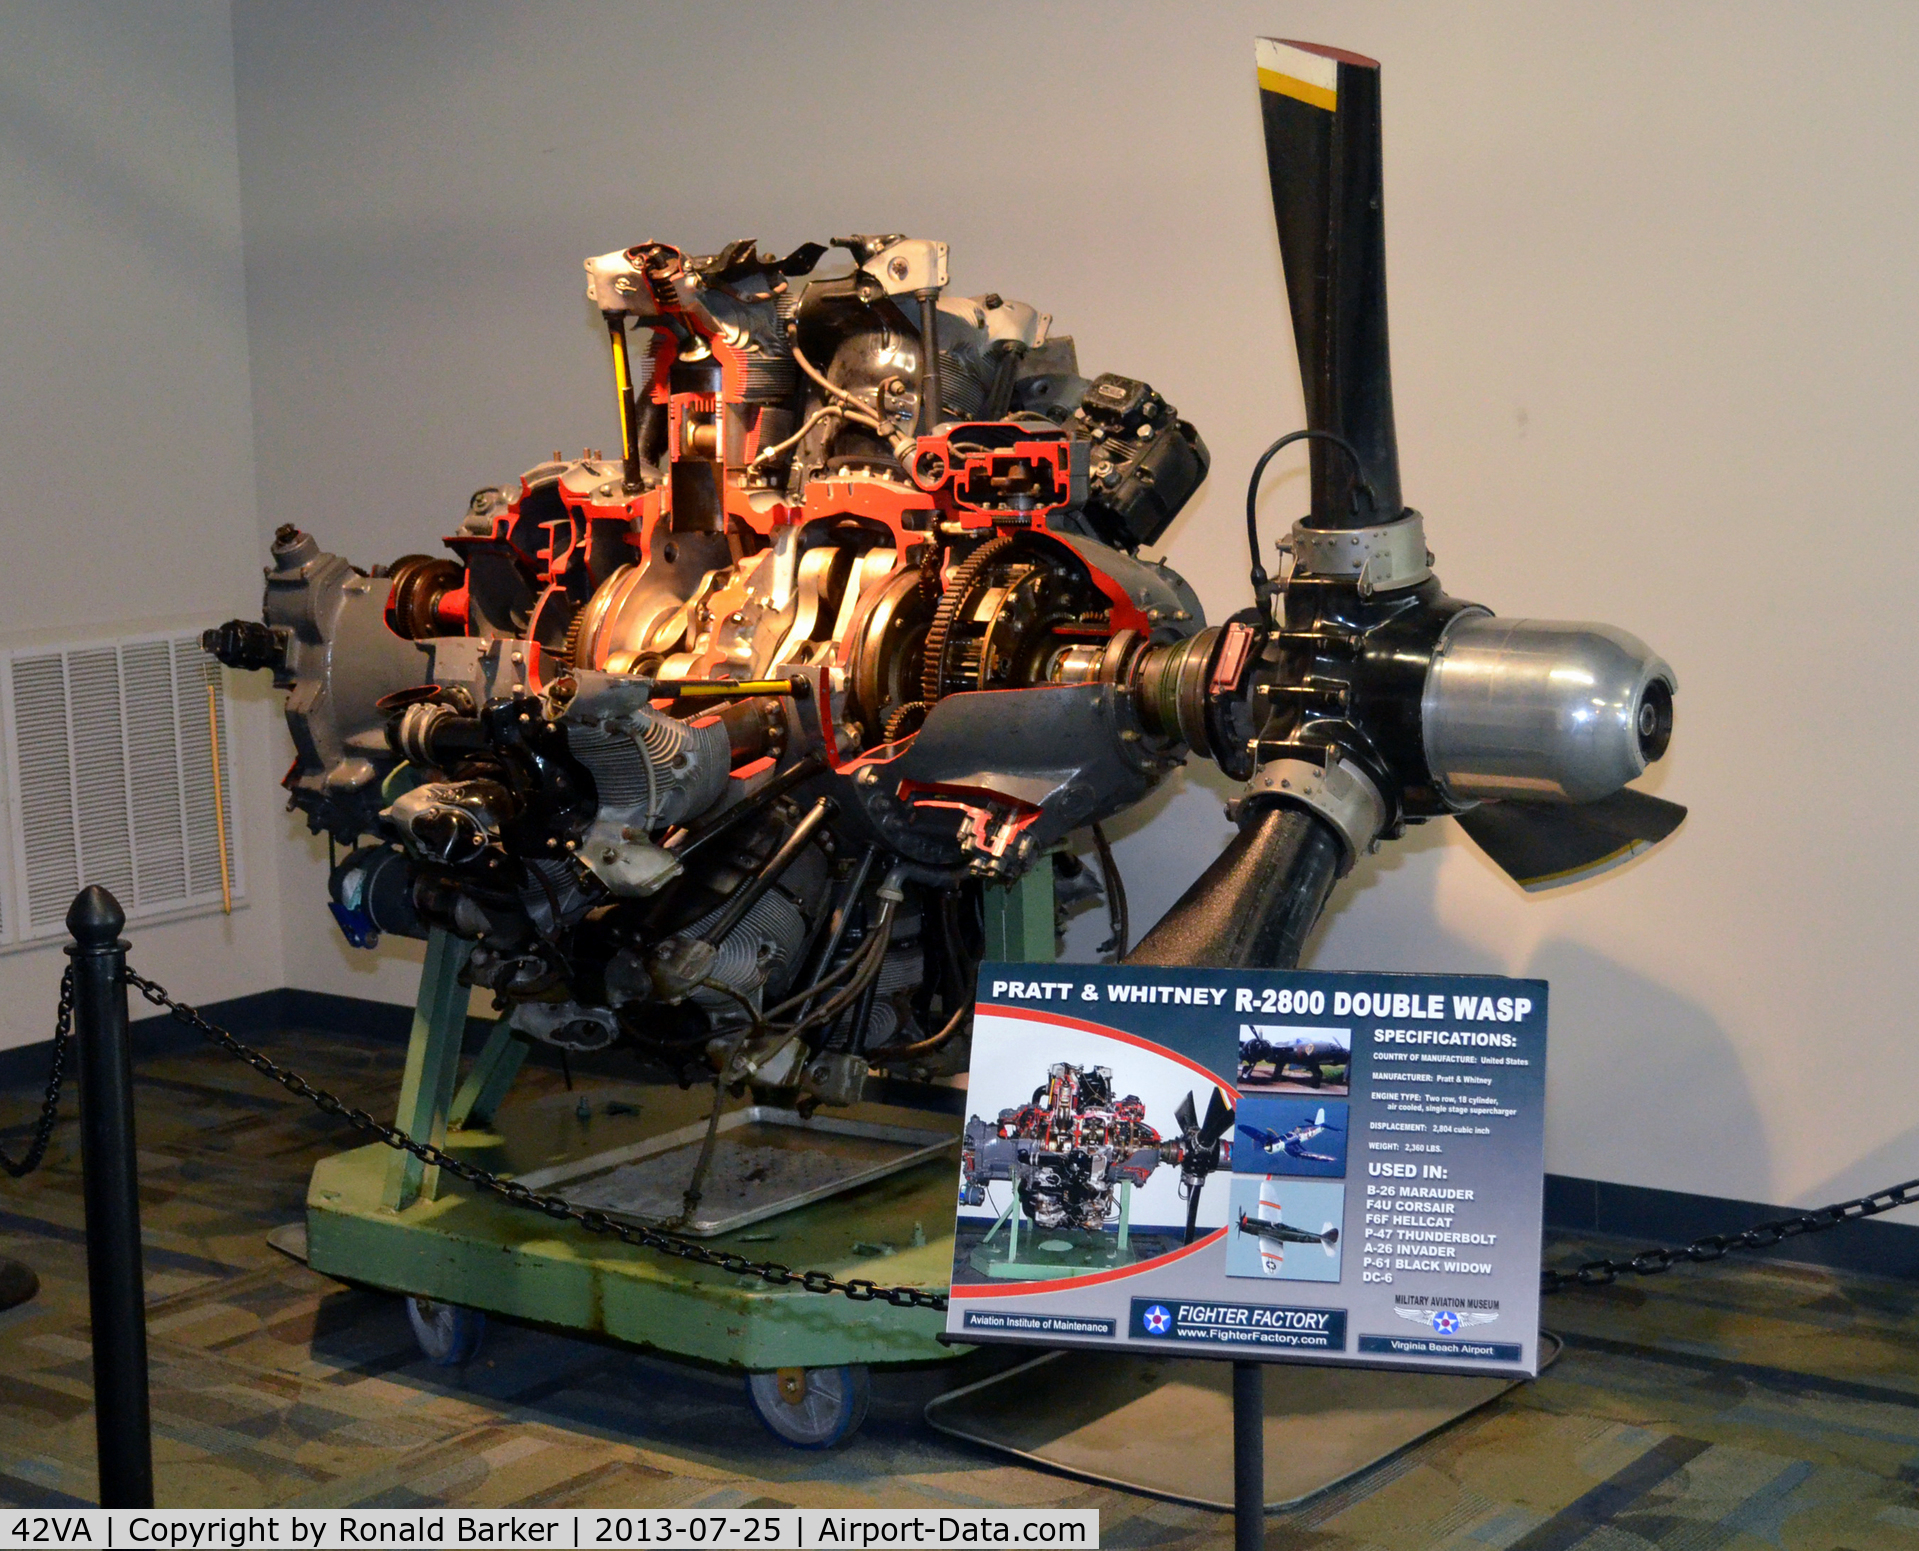 Virginia Beach Airport (42VA) - R-2800 Dual Wasp engine, Military Aviation Museum, Pungo, VA